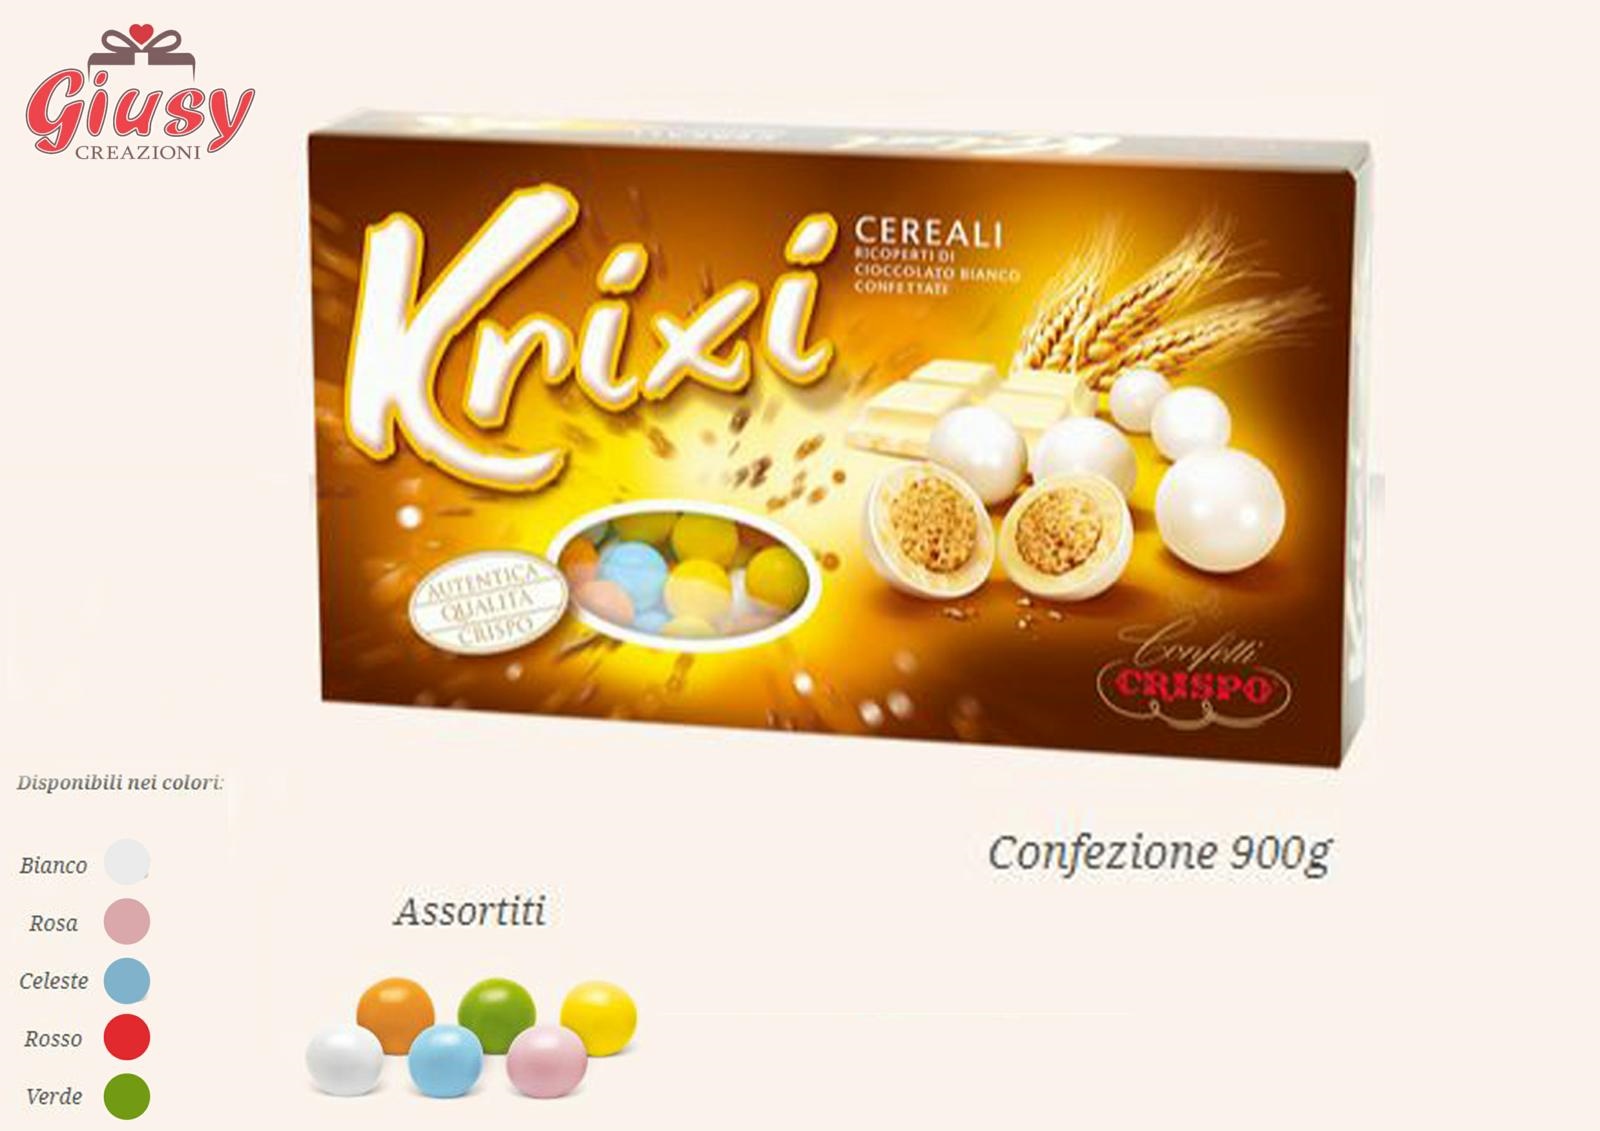 Confetti Crispo Krixi Cereali Ricoperti Di Cioccolato Bianco Confezione 900g Celeste